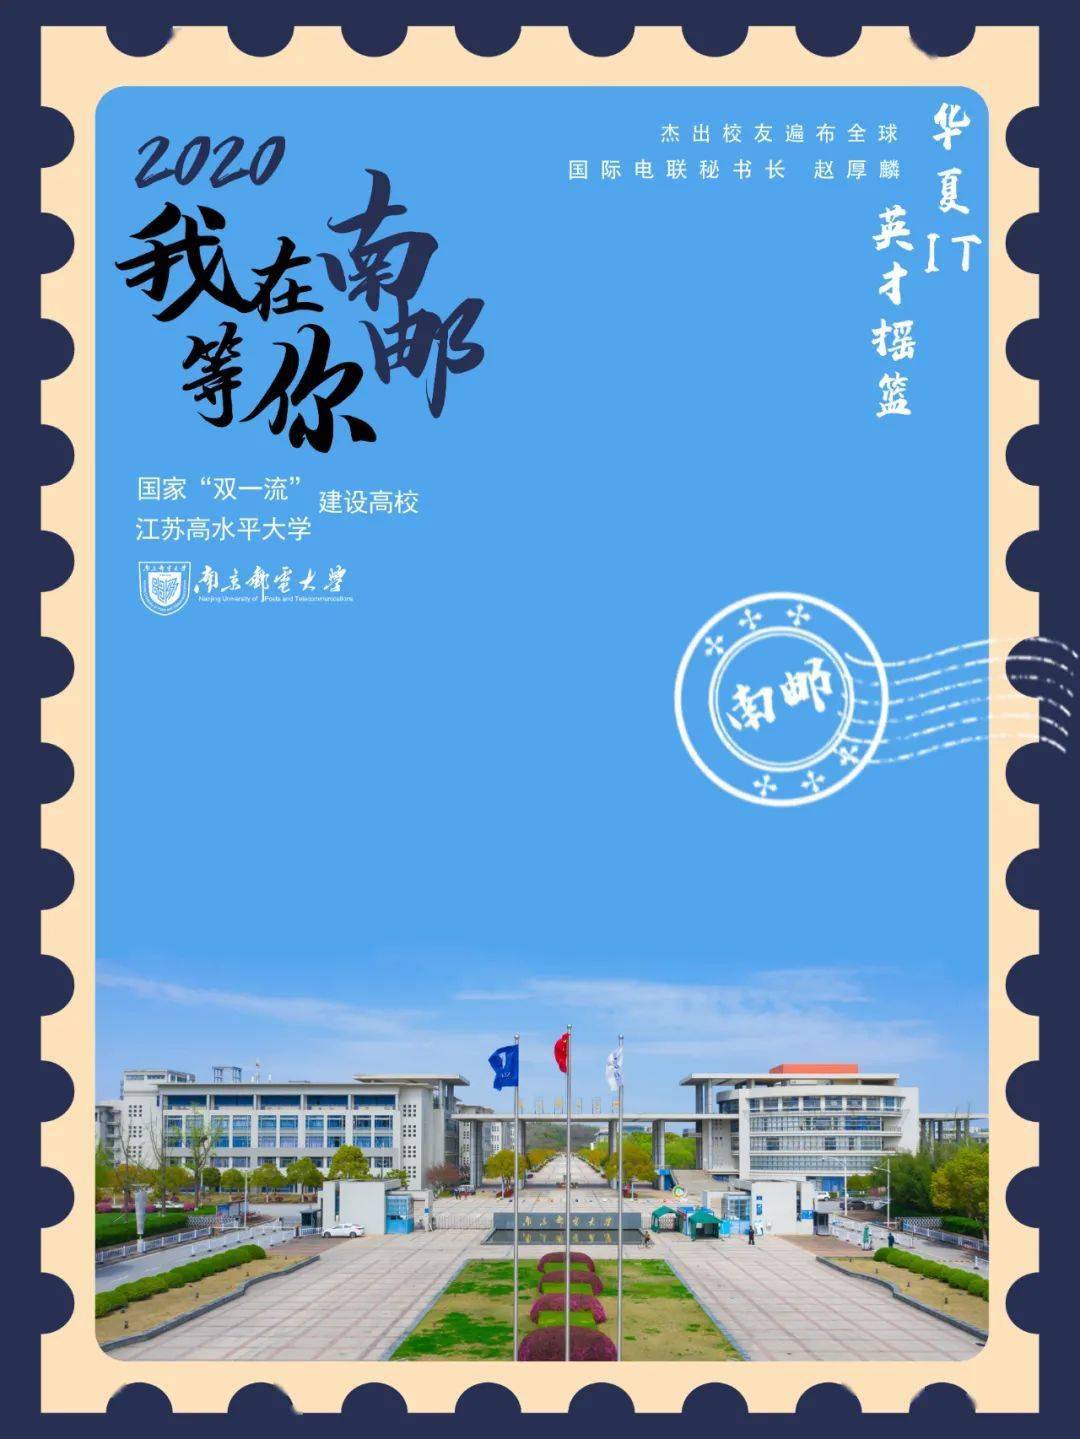 重磅南京邮电大学2020年招生宣传片发布